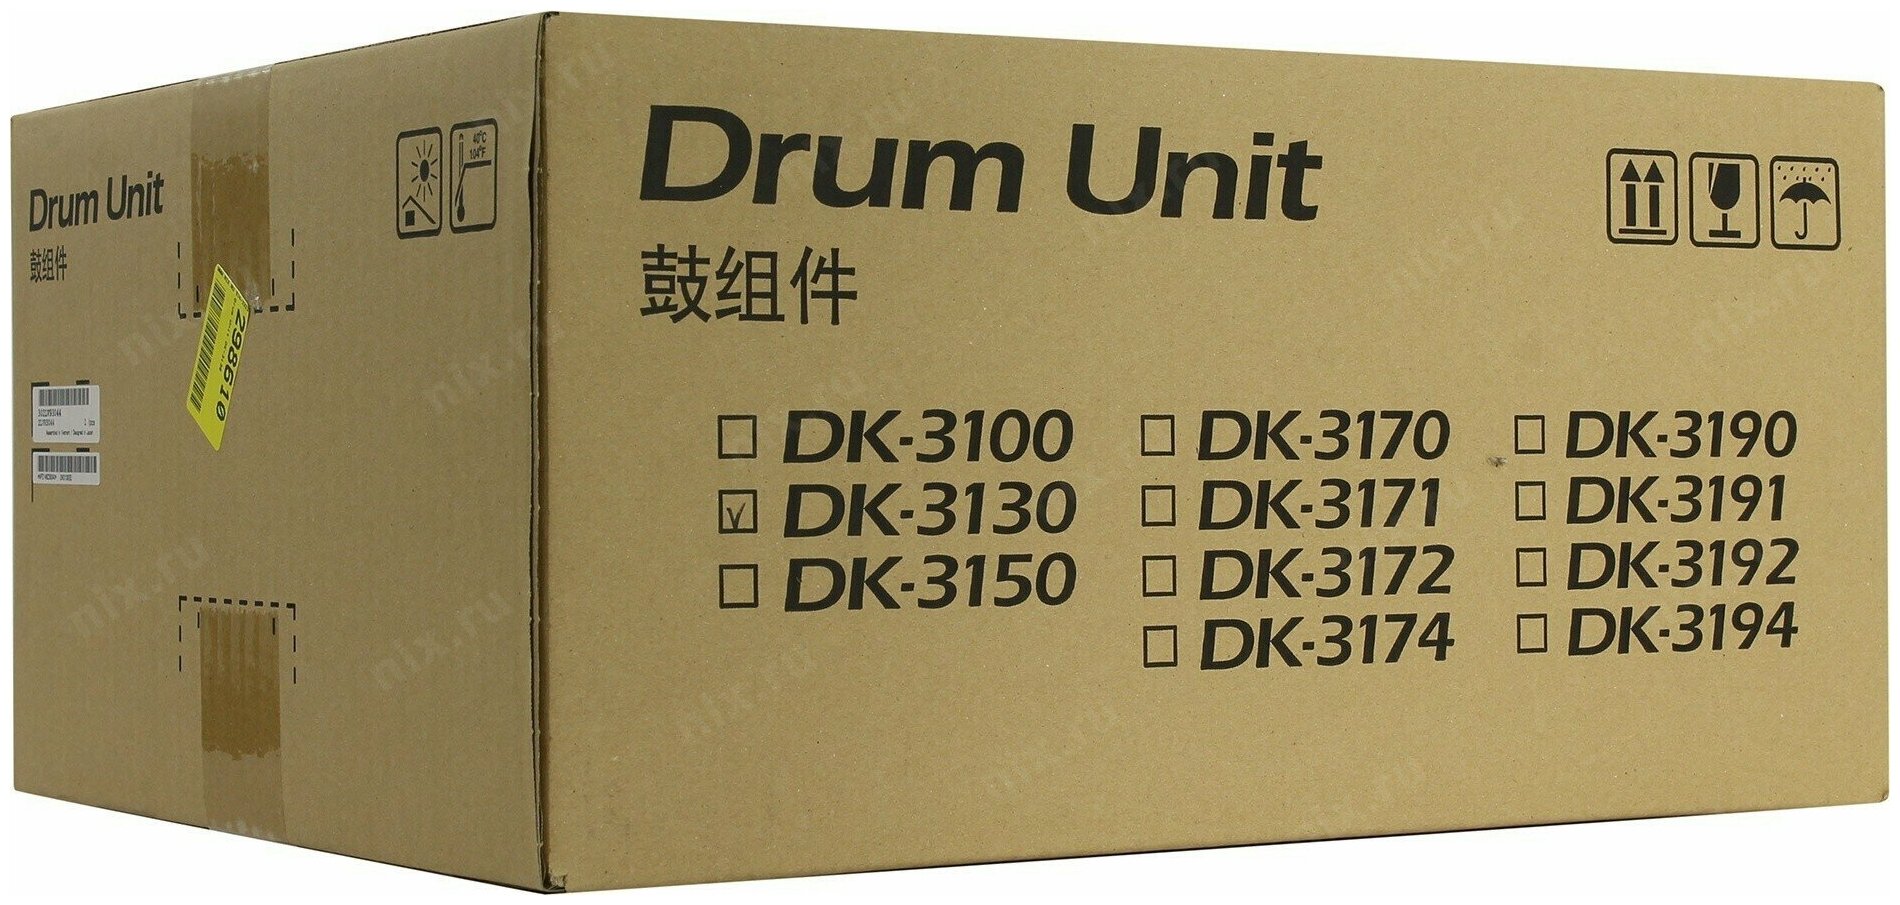 Блок фотобарабана (Drum-Unit) Kyocera DK-3190 оригинал